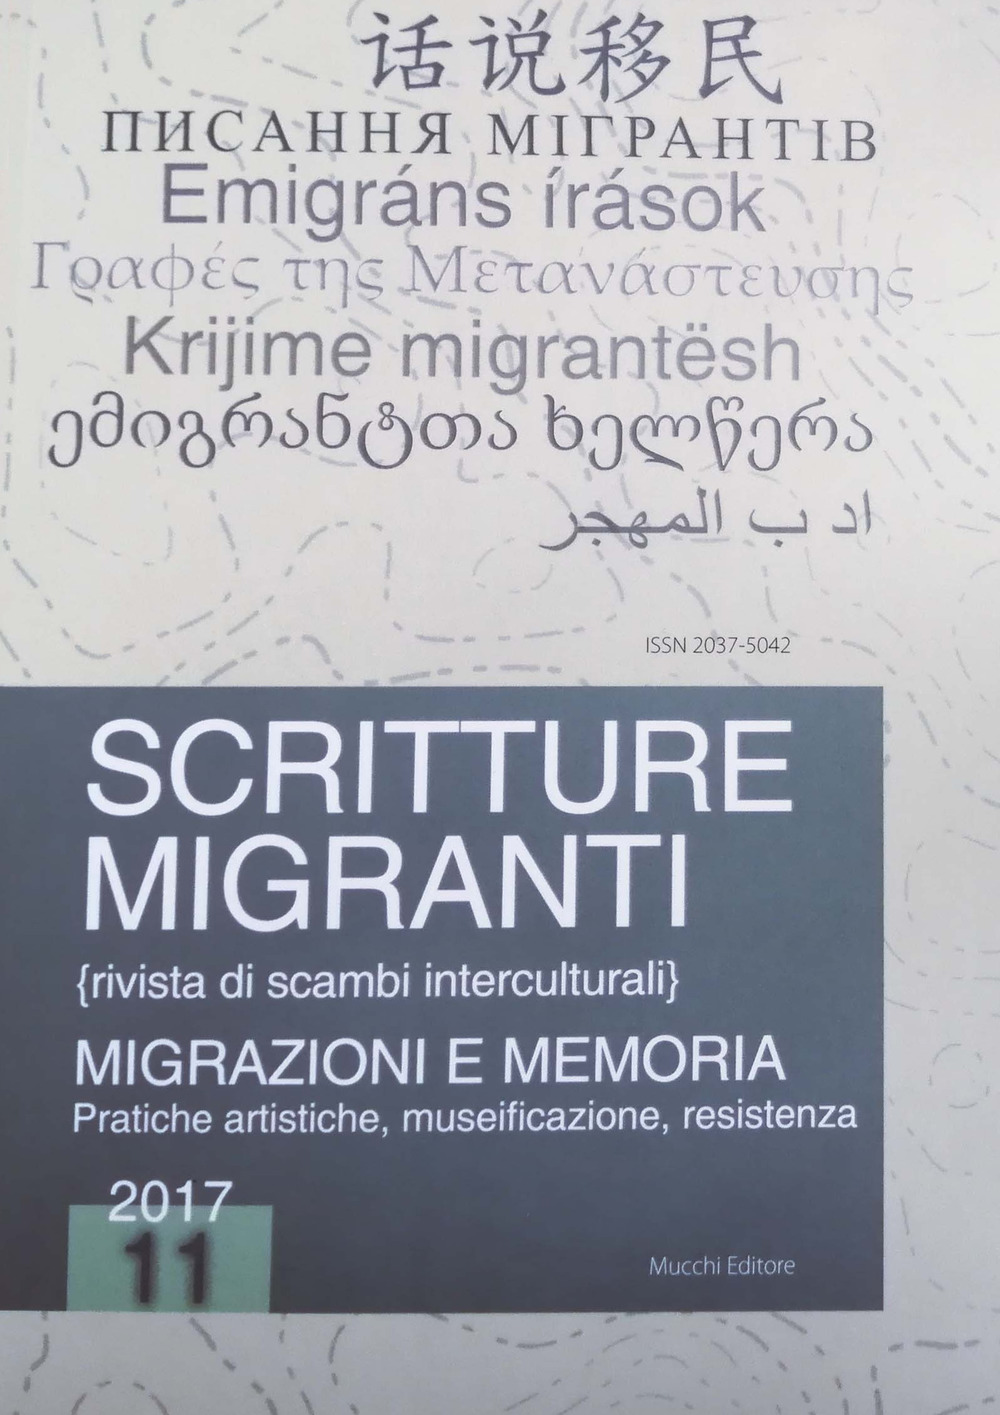 Scritture migranti (2017). Vol. 11: Migrazioni e memoria. Pratiche artistiche, museificazione, resistenza